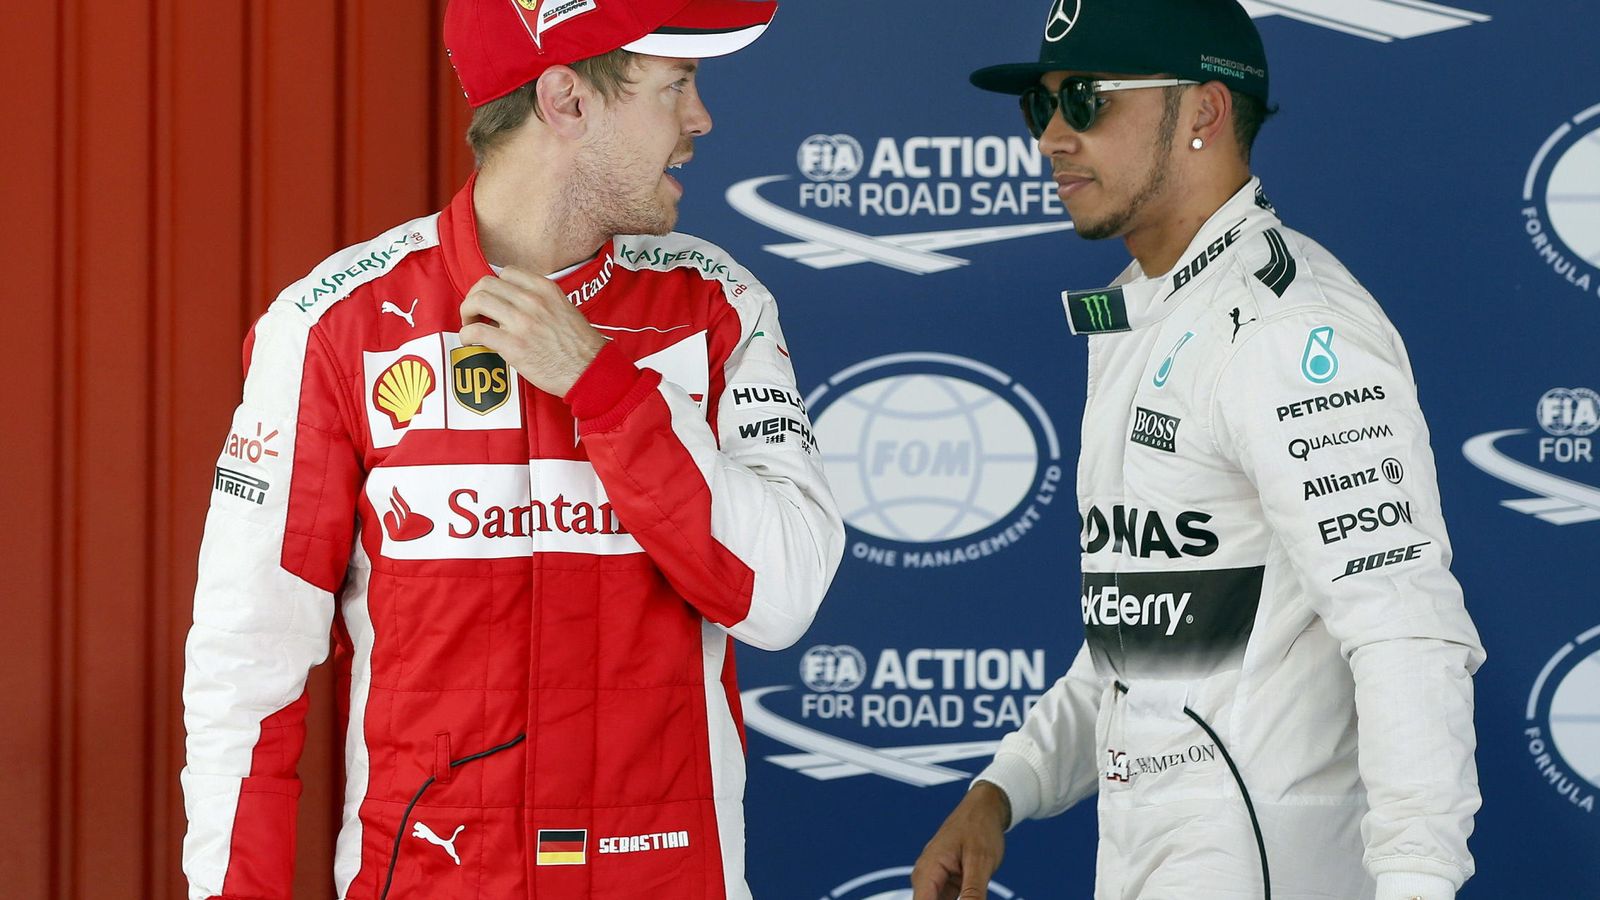 Foto: Lewis Hamilton y Sebastian Vettel en el último gran premio, el de España.